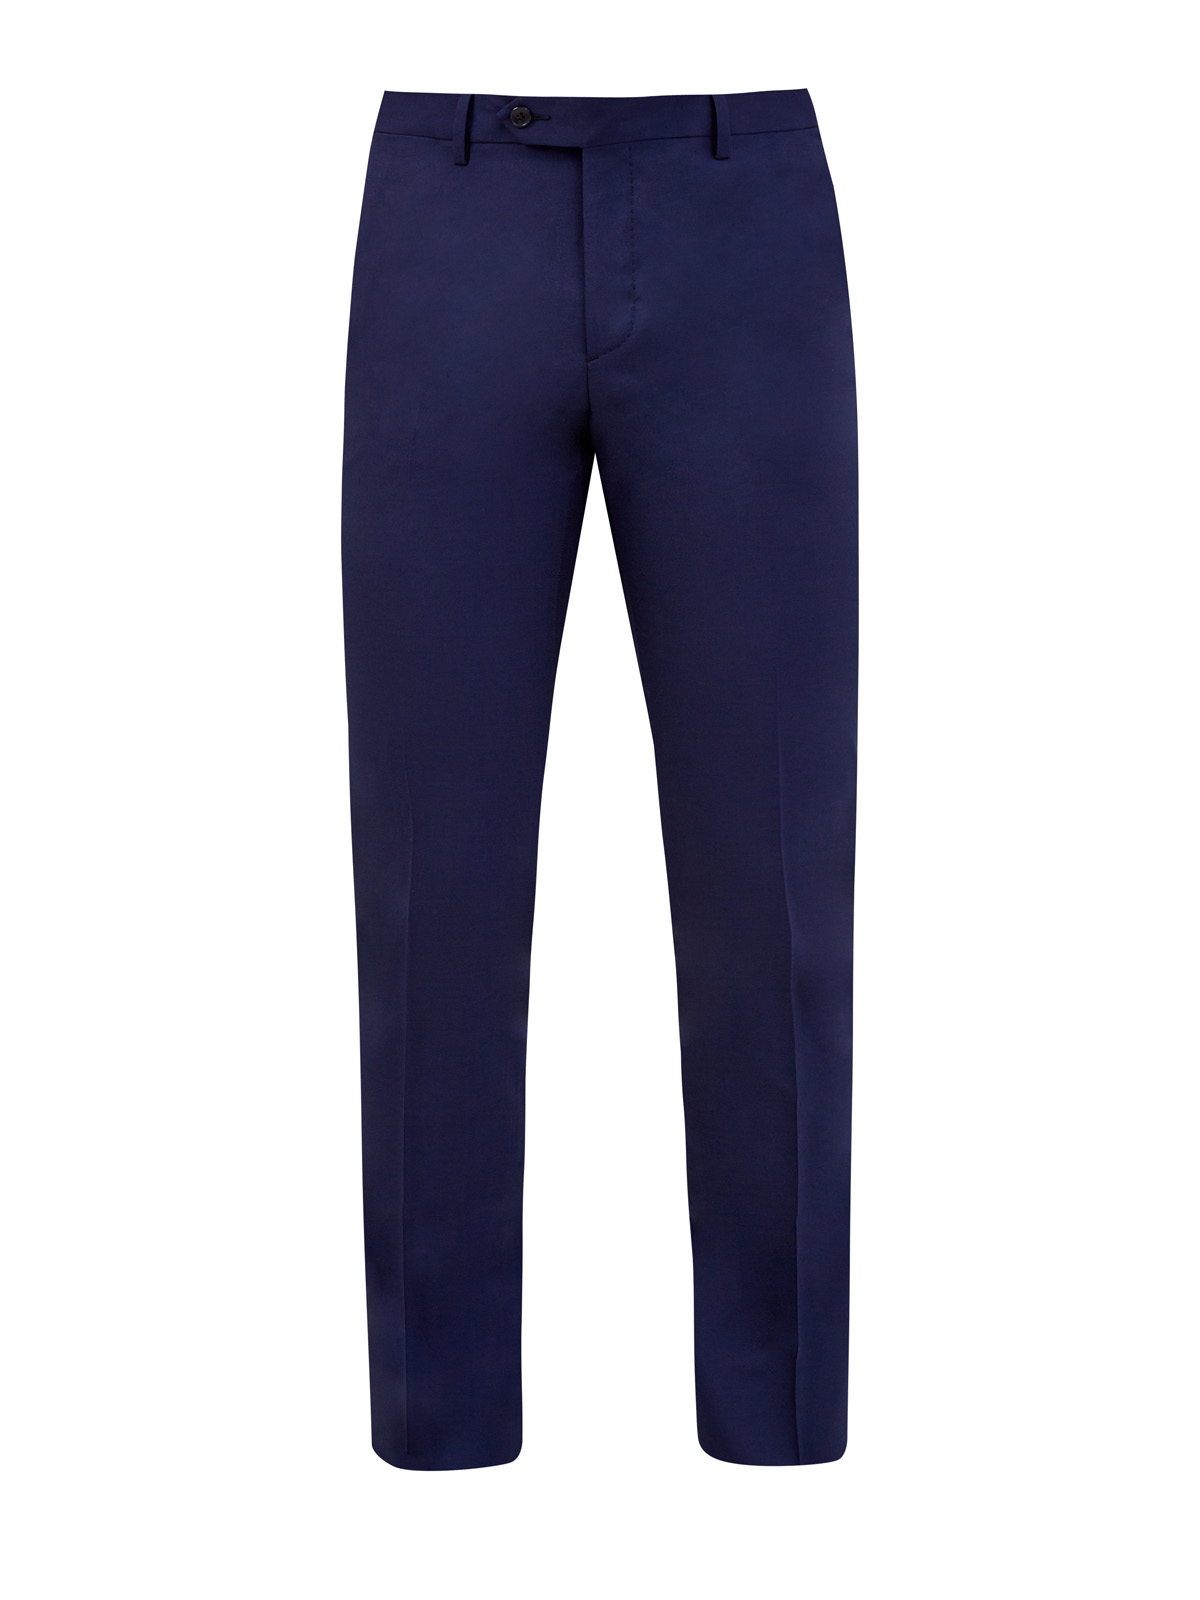 Костюмные брюки из тонкой шерстяной ткани L.B.M. 1911, цвет синий, размер 46;52;54